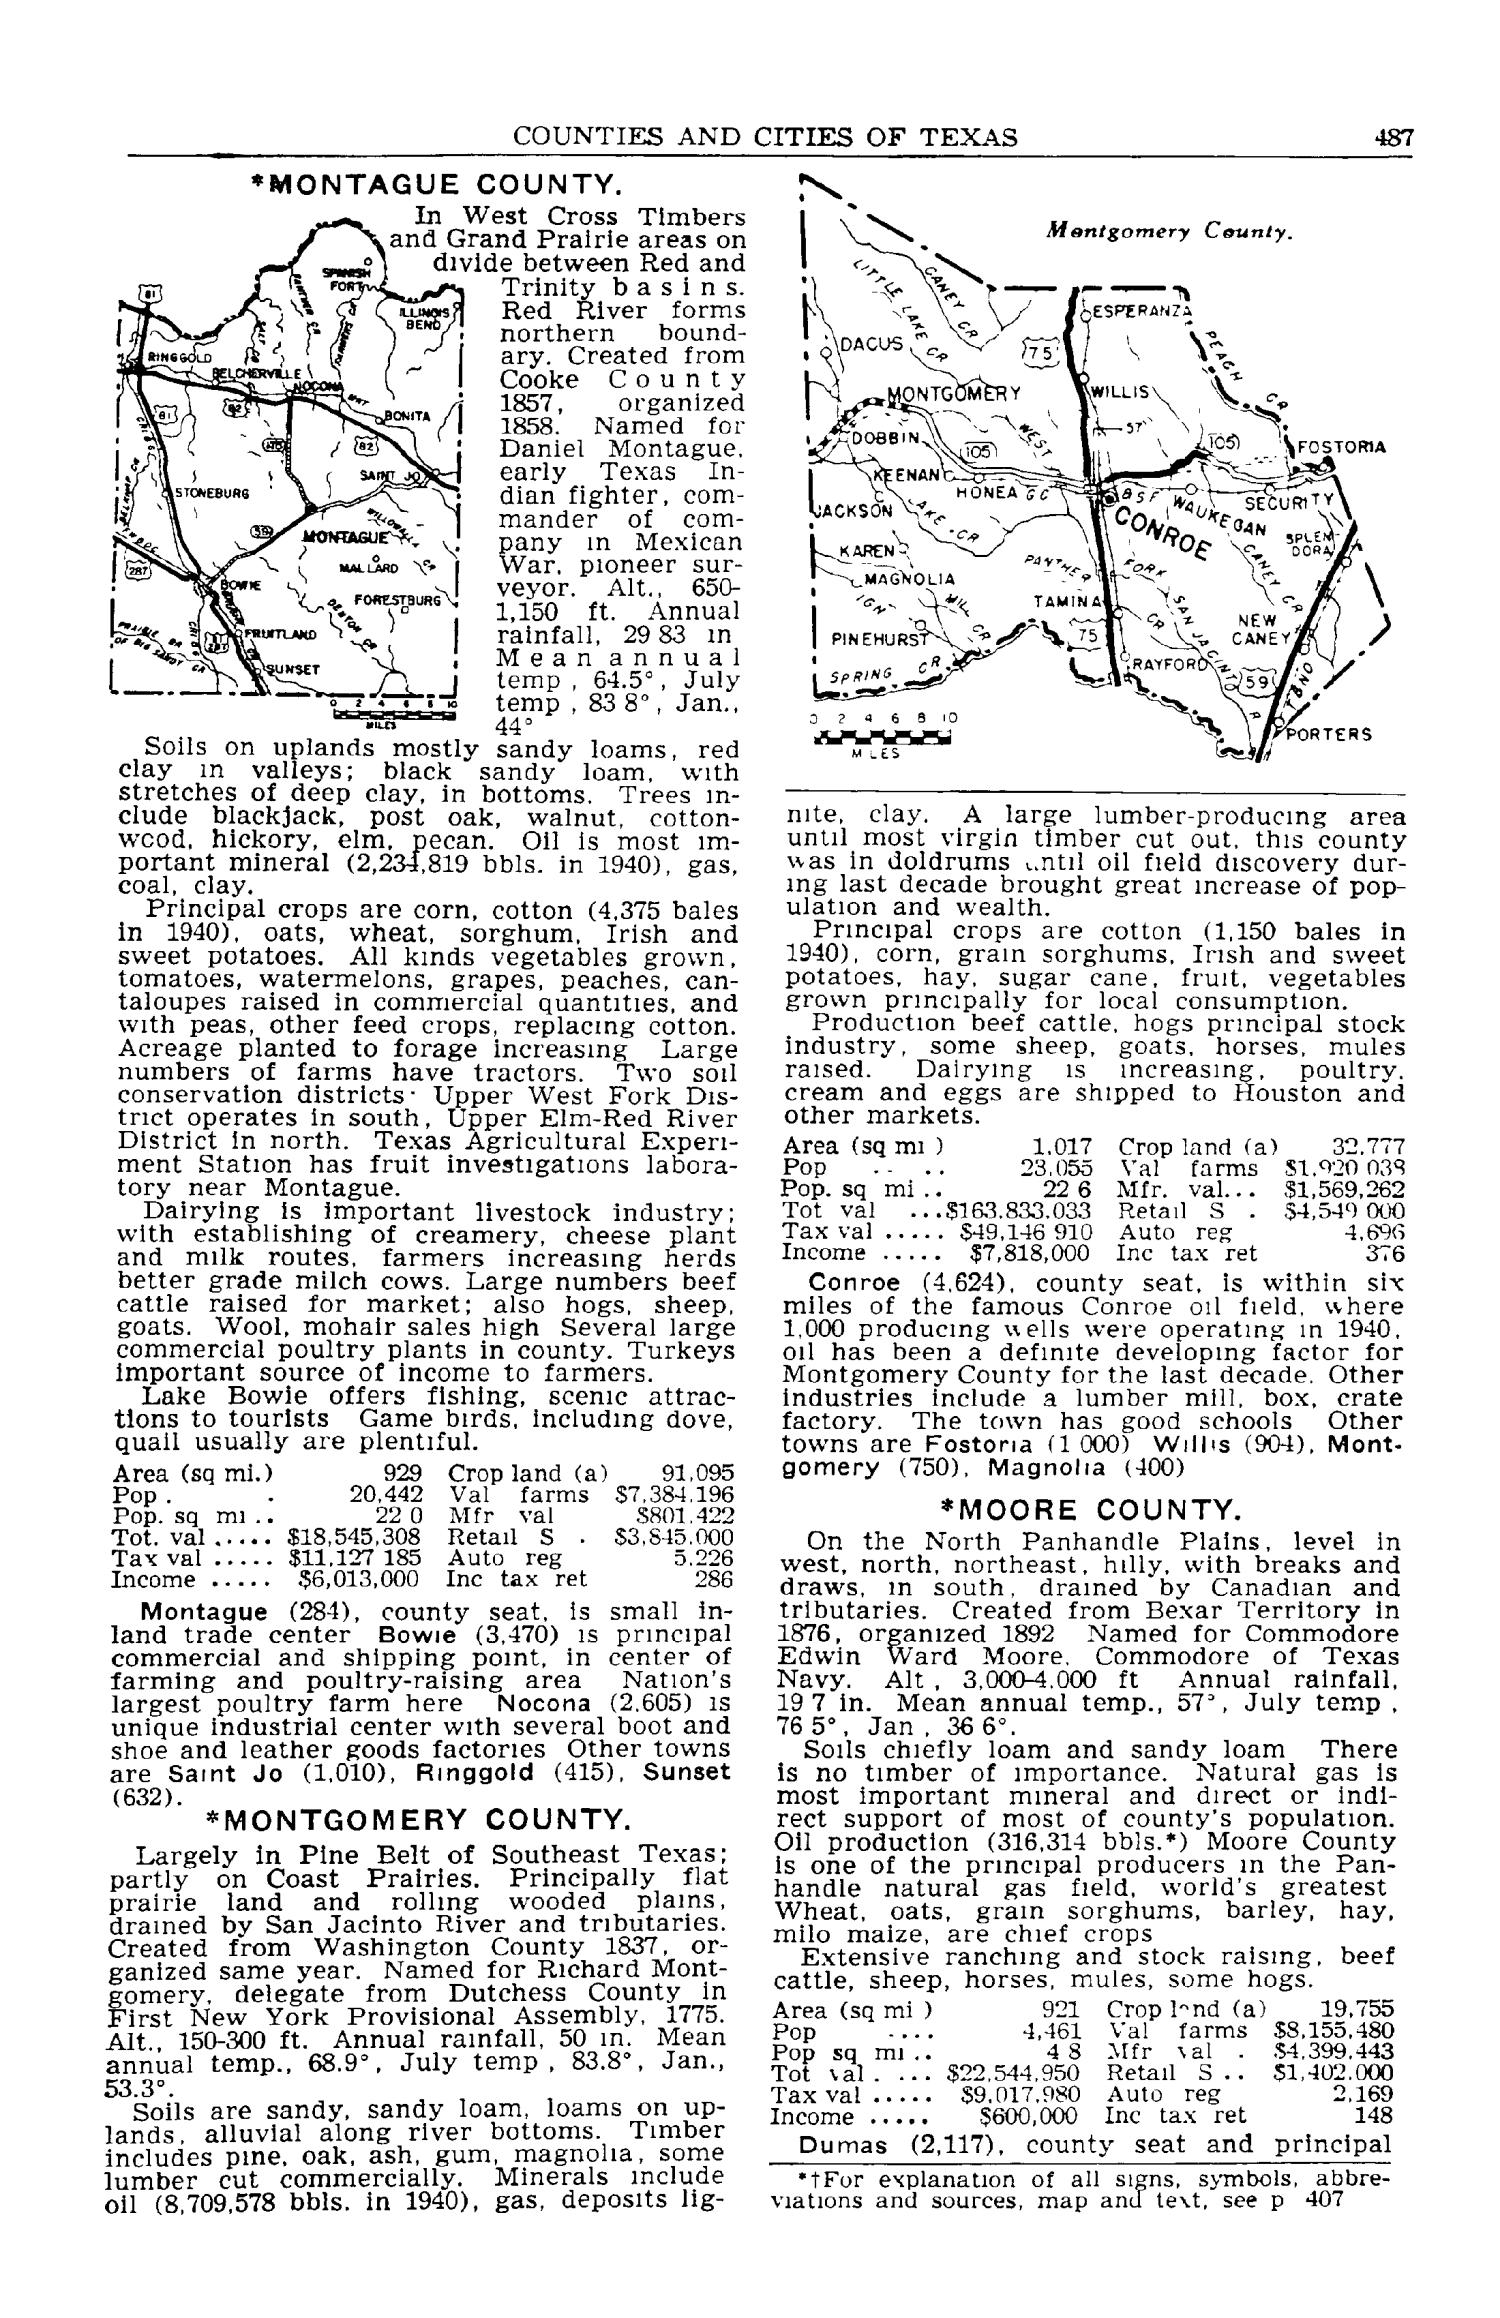 Texas Almanac, 1941-1942
                                                
                                                    487
                                                